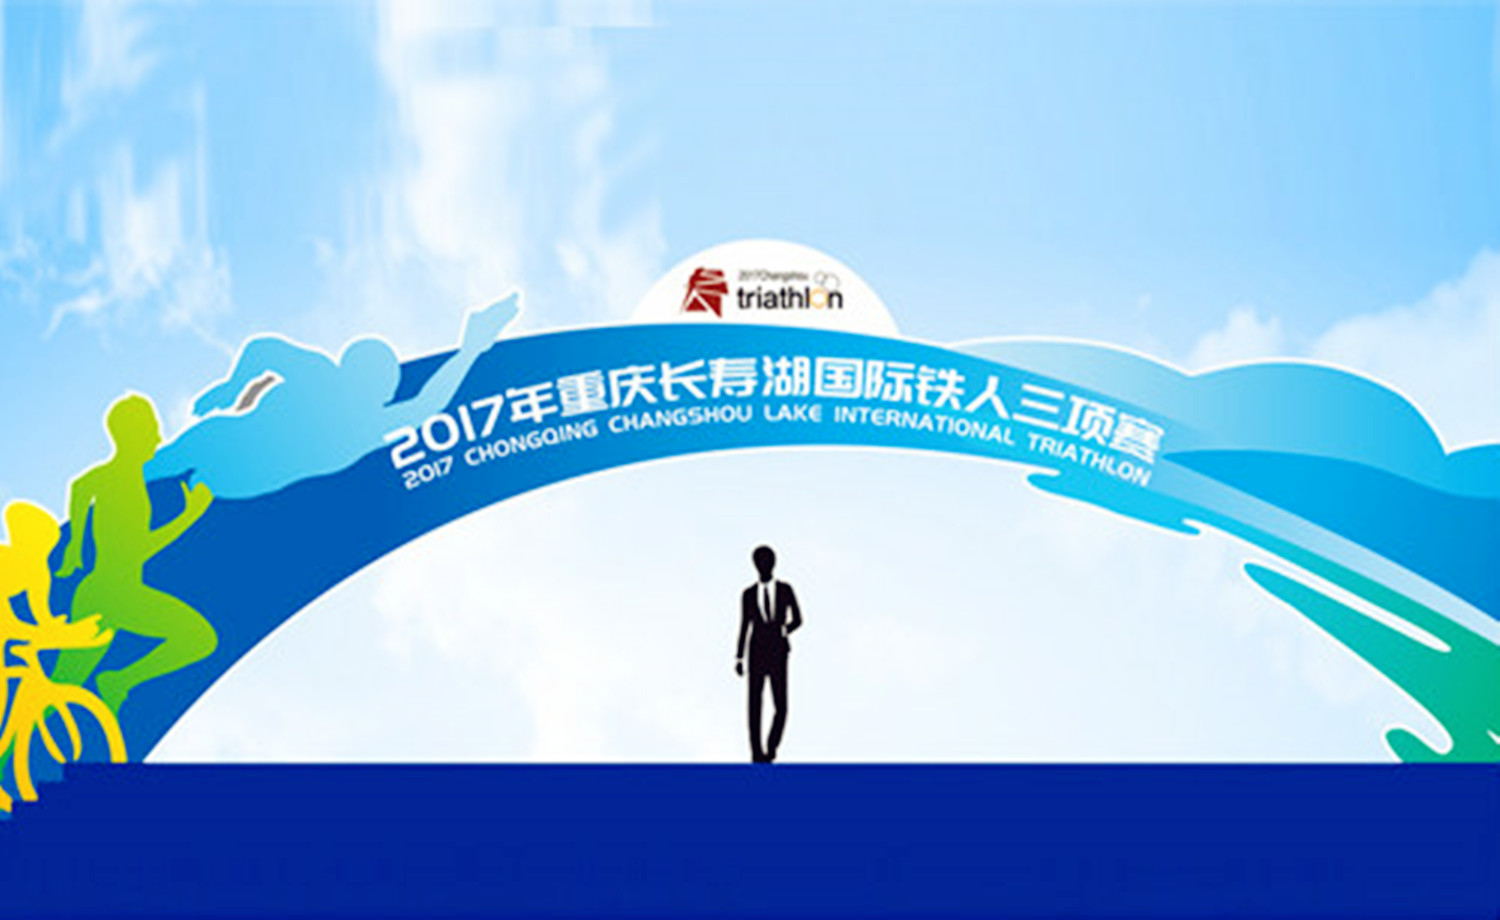 2017年重庆长寿湖国际铁人三项赛